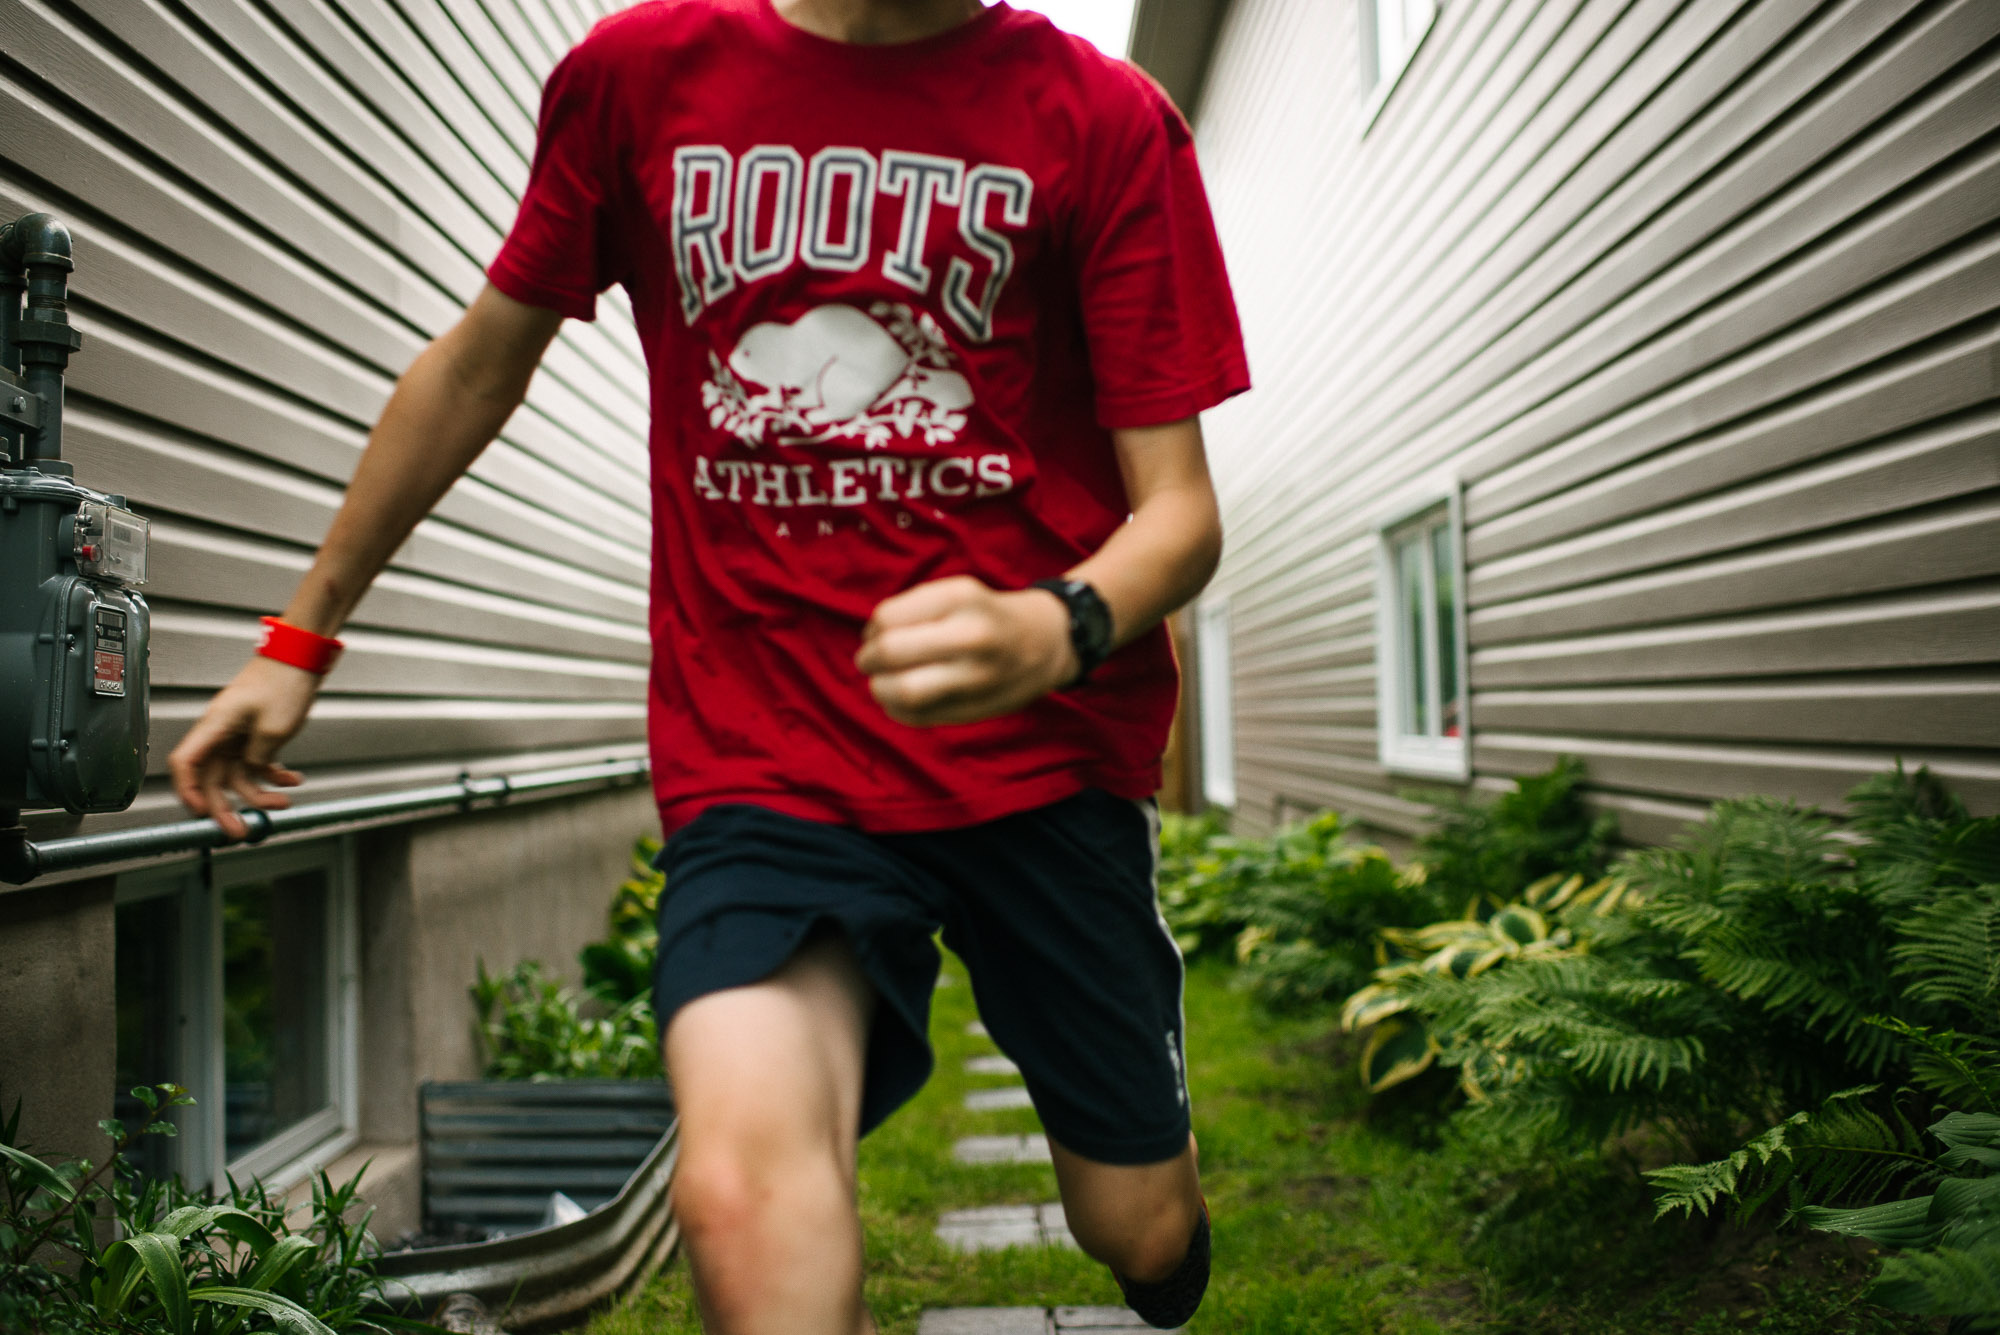 boy with red shirt runs toward camera